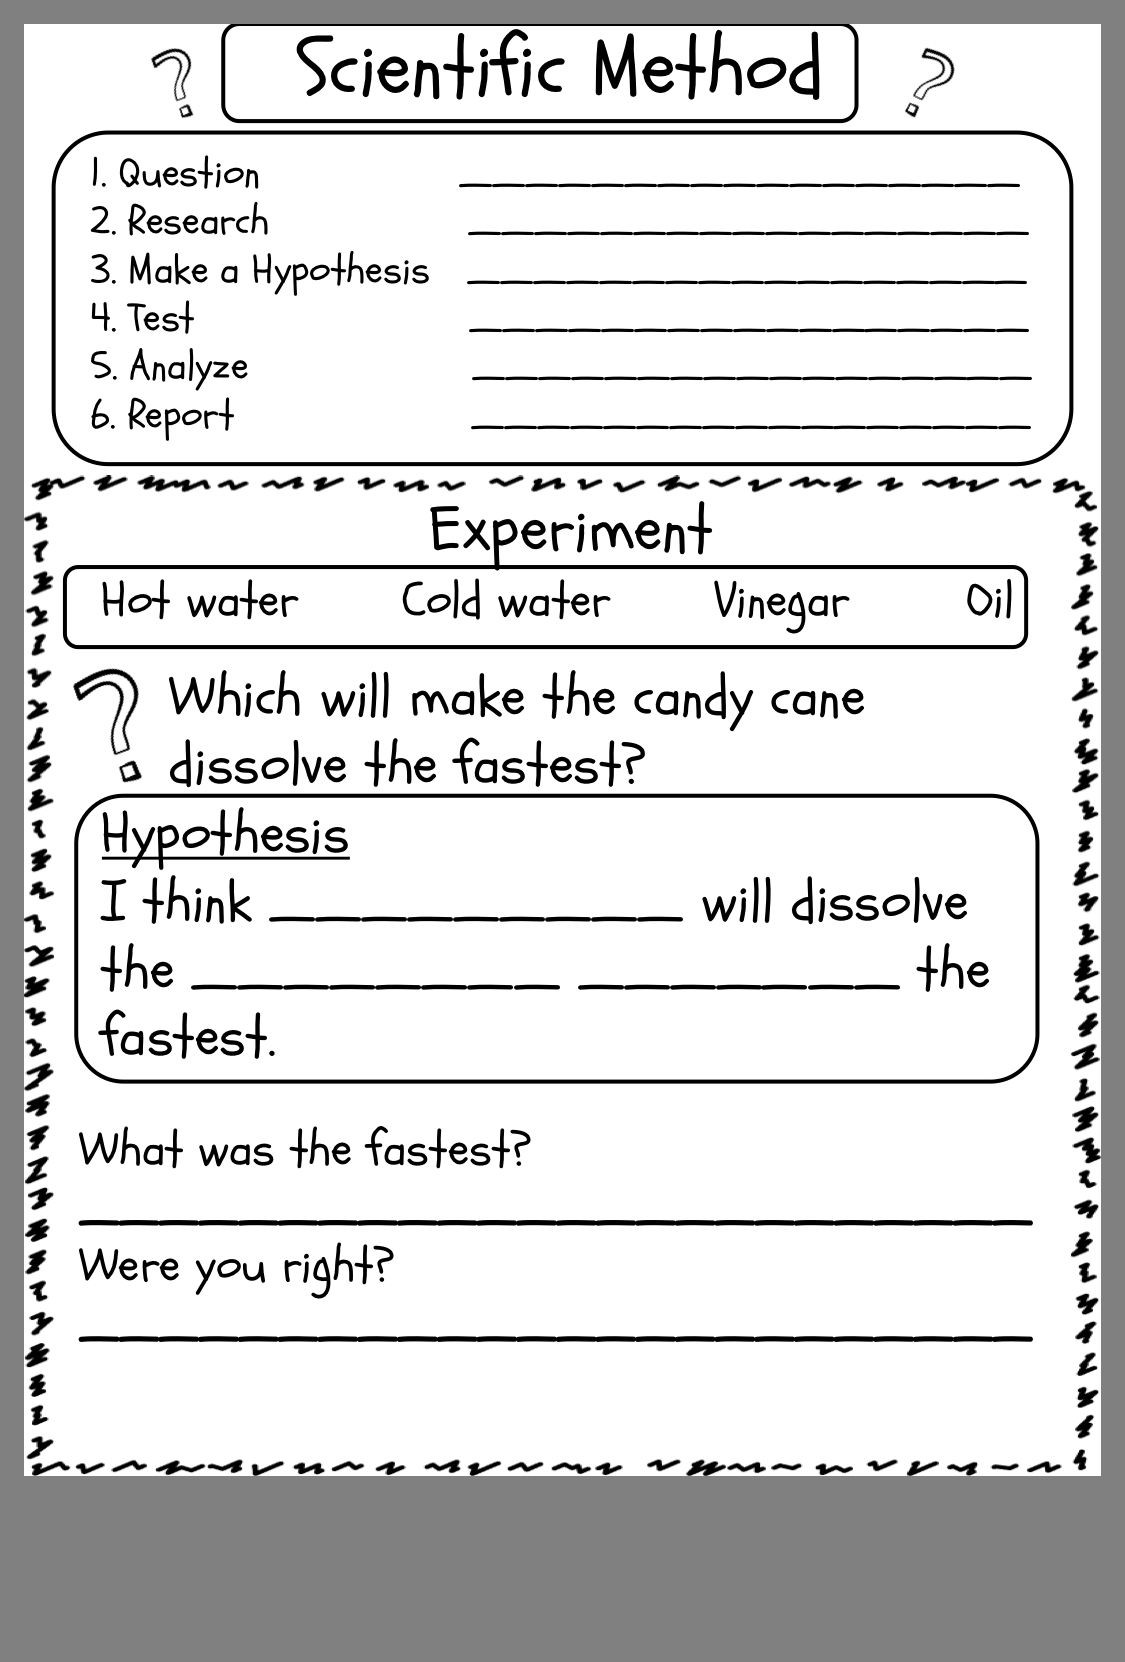 Scientific Method Worksheet Answer Key Scientific Method Experiment Worksheet